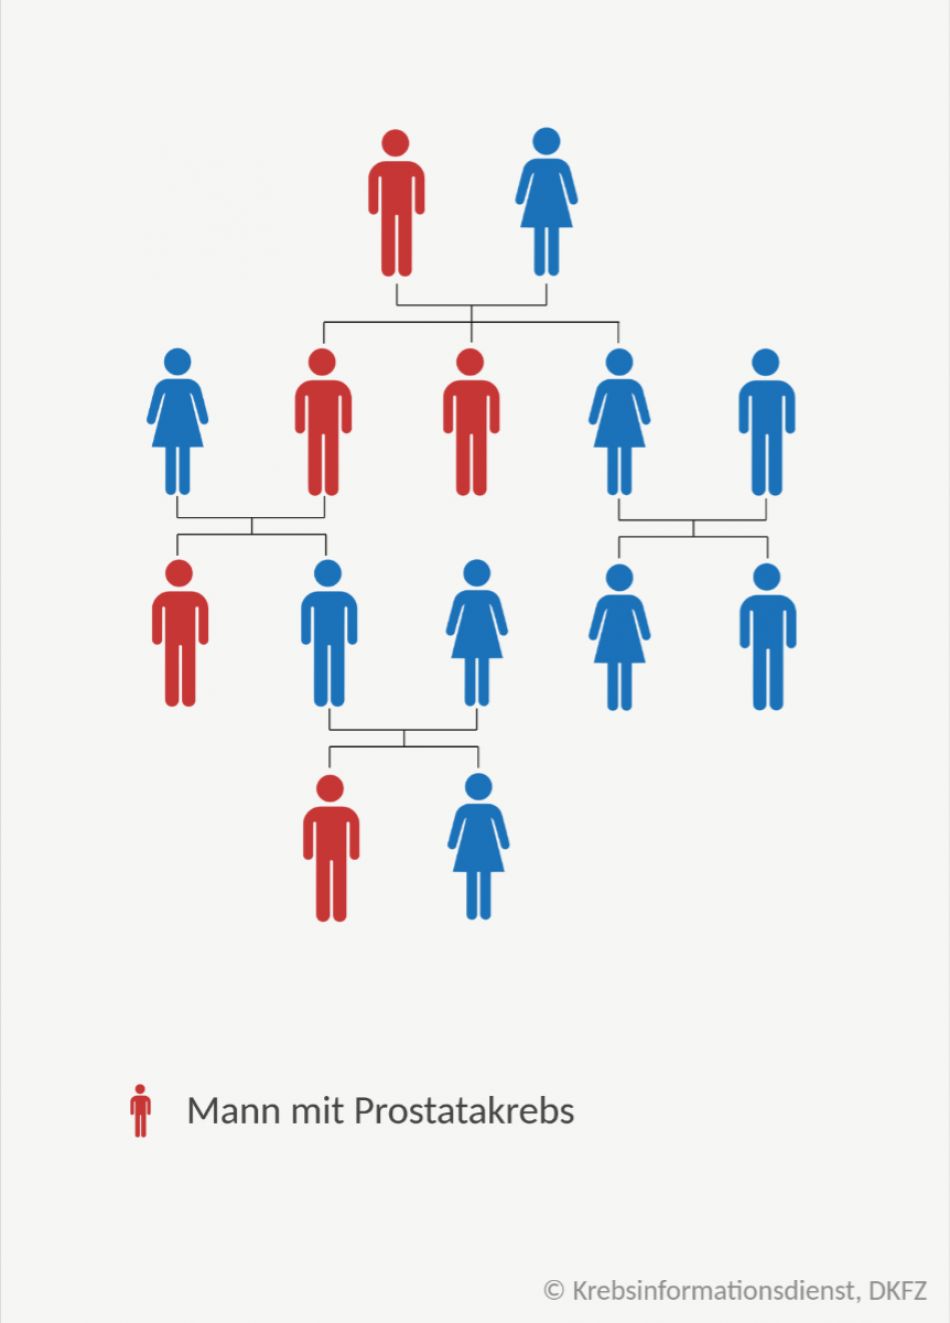 Stammbaum einer Familie mit erblichen Prostatakrebs: Es gibt Väter und Brüder die erkrankt sind und solche die gesund geblieben sind.